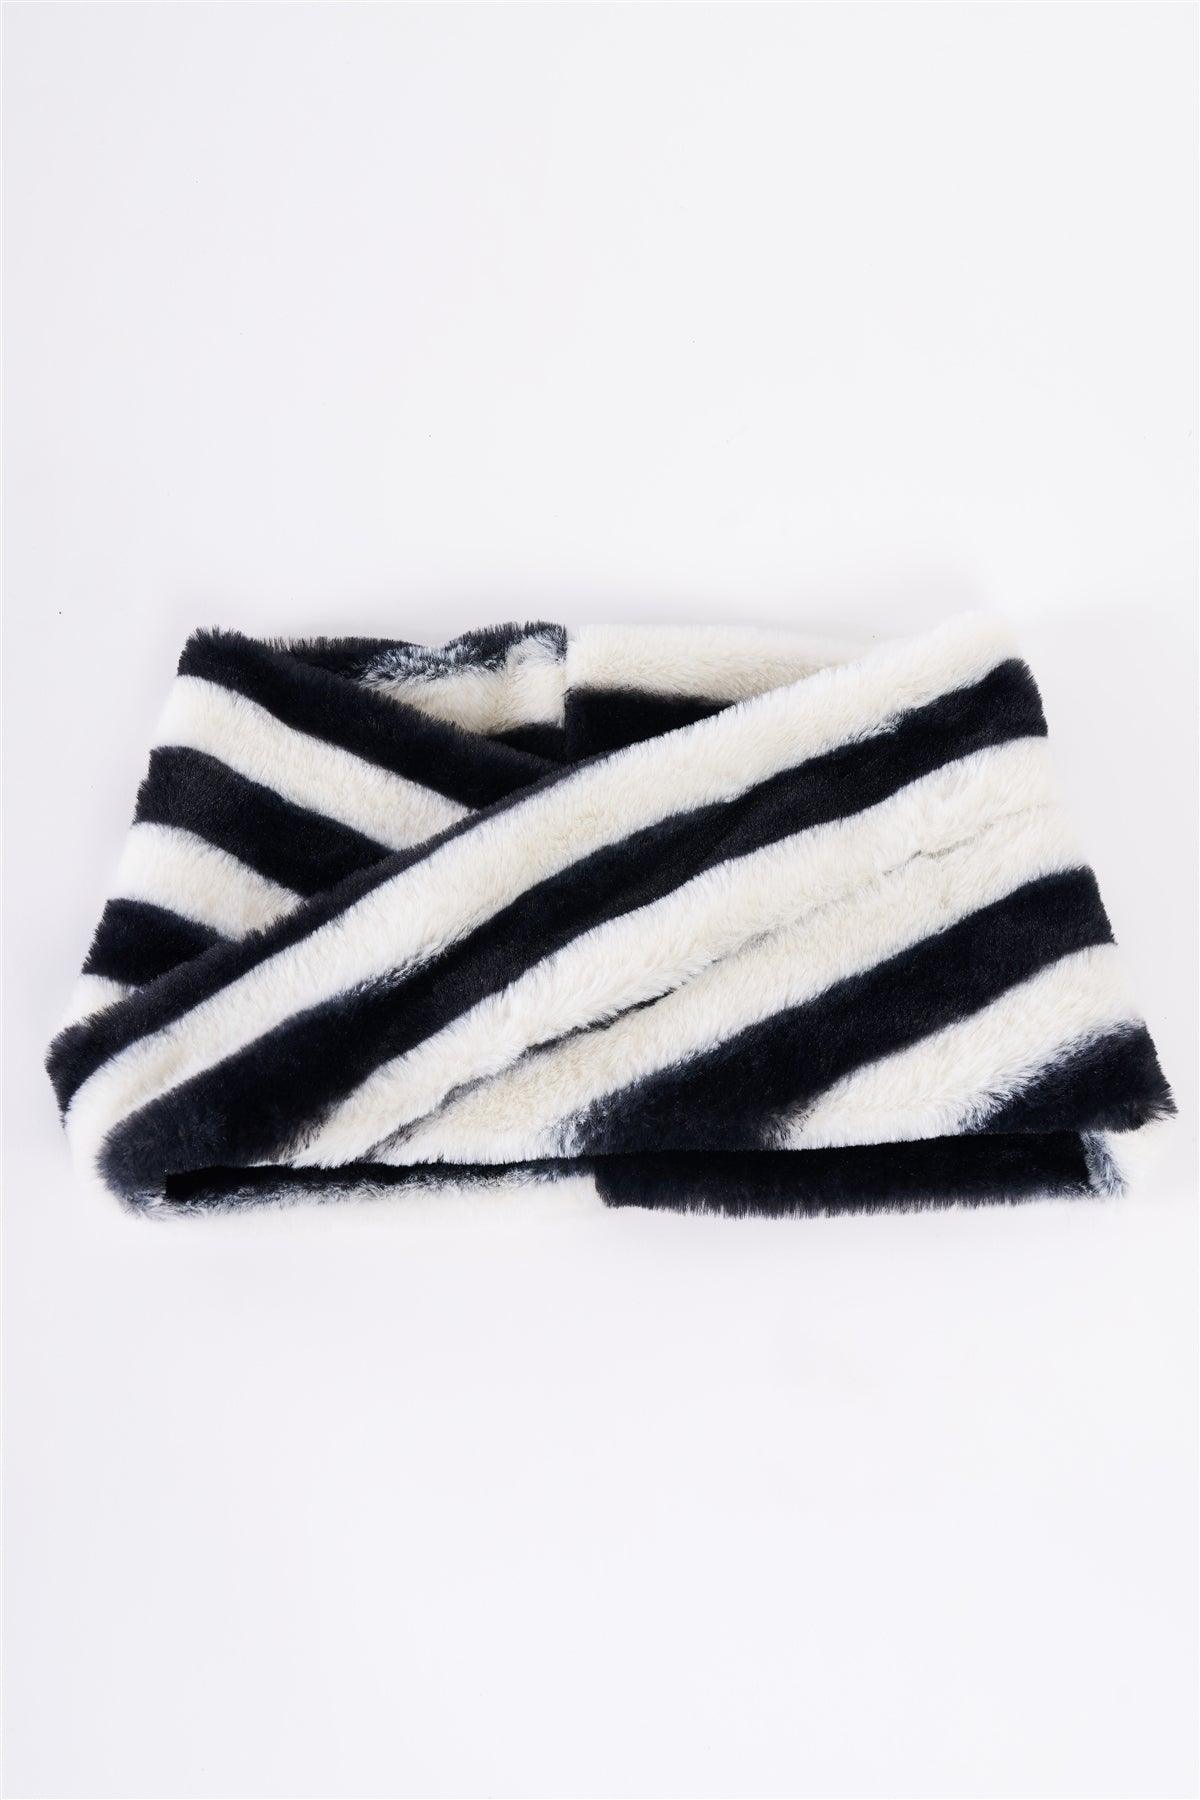 Zebra Black&White Striped Fuzzy Faux Fur Twisted Infinity Scarf /3 Pieces